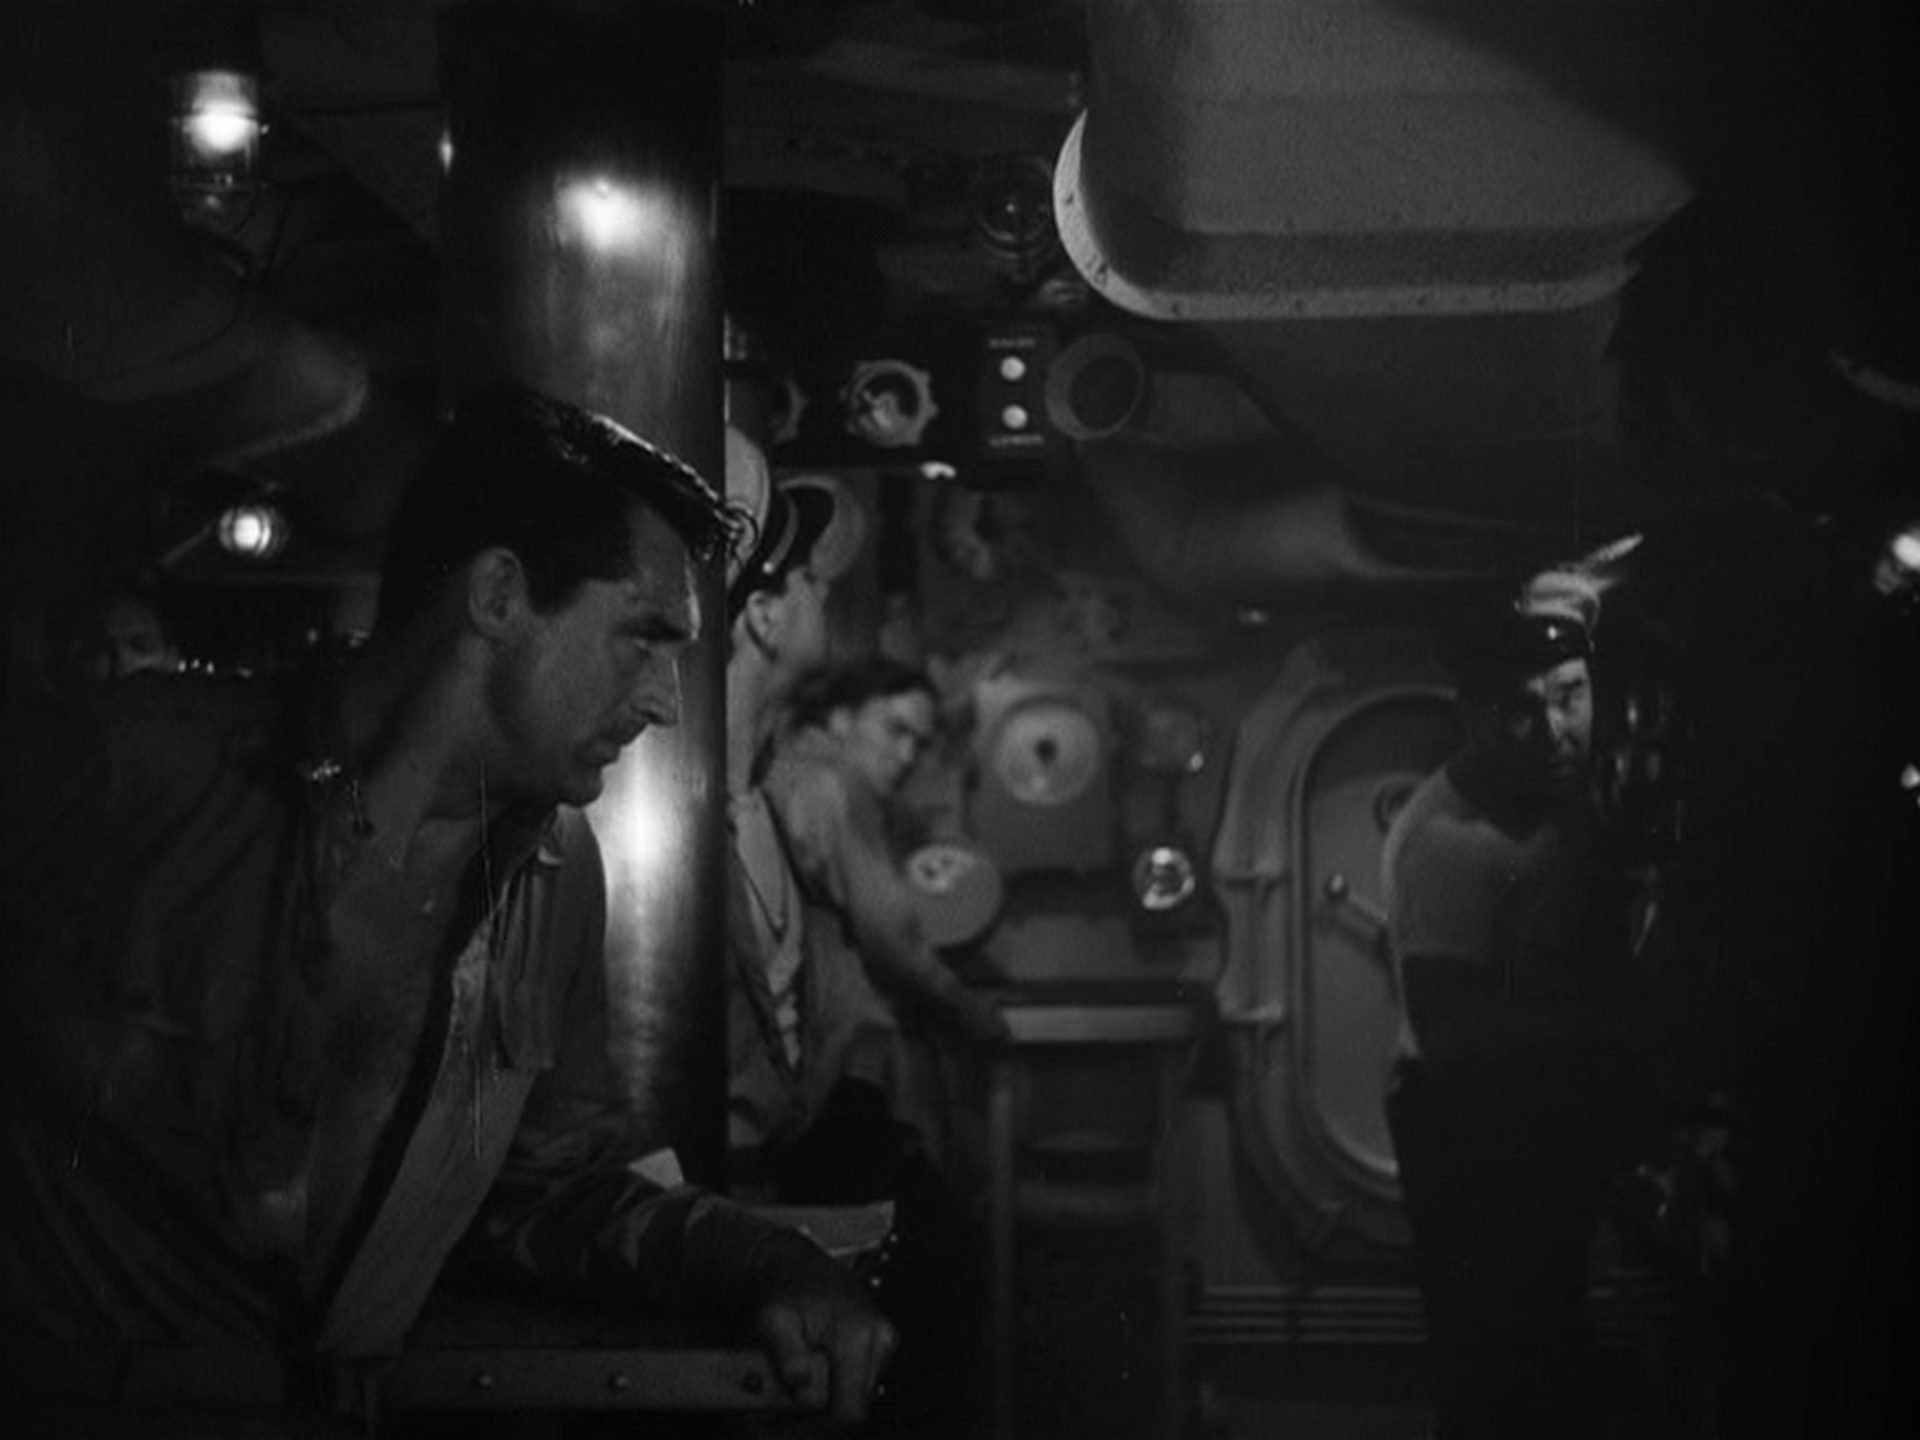 Finstere Schwarz-Weiß-Szene mit einem jungen Cary Grant im Vordergrund mit geöffnetem Hemd und angespanntem Blick im Innern eines U-Bootes.